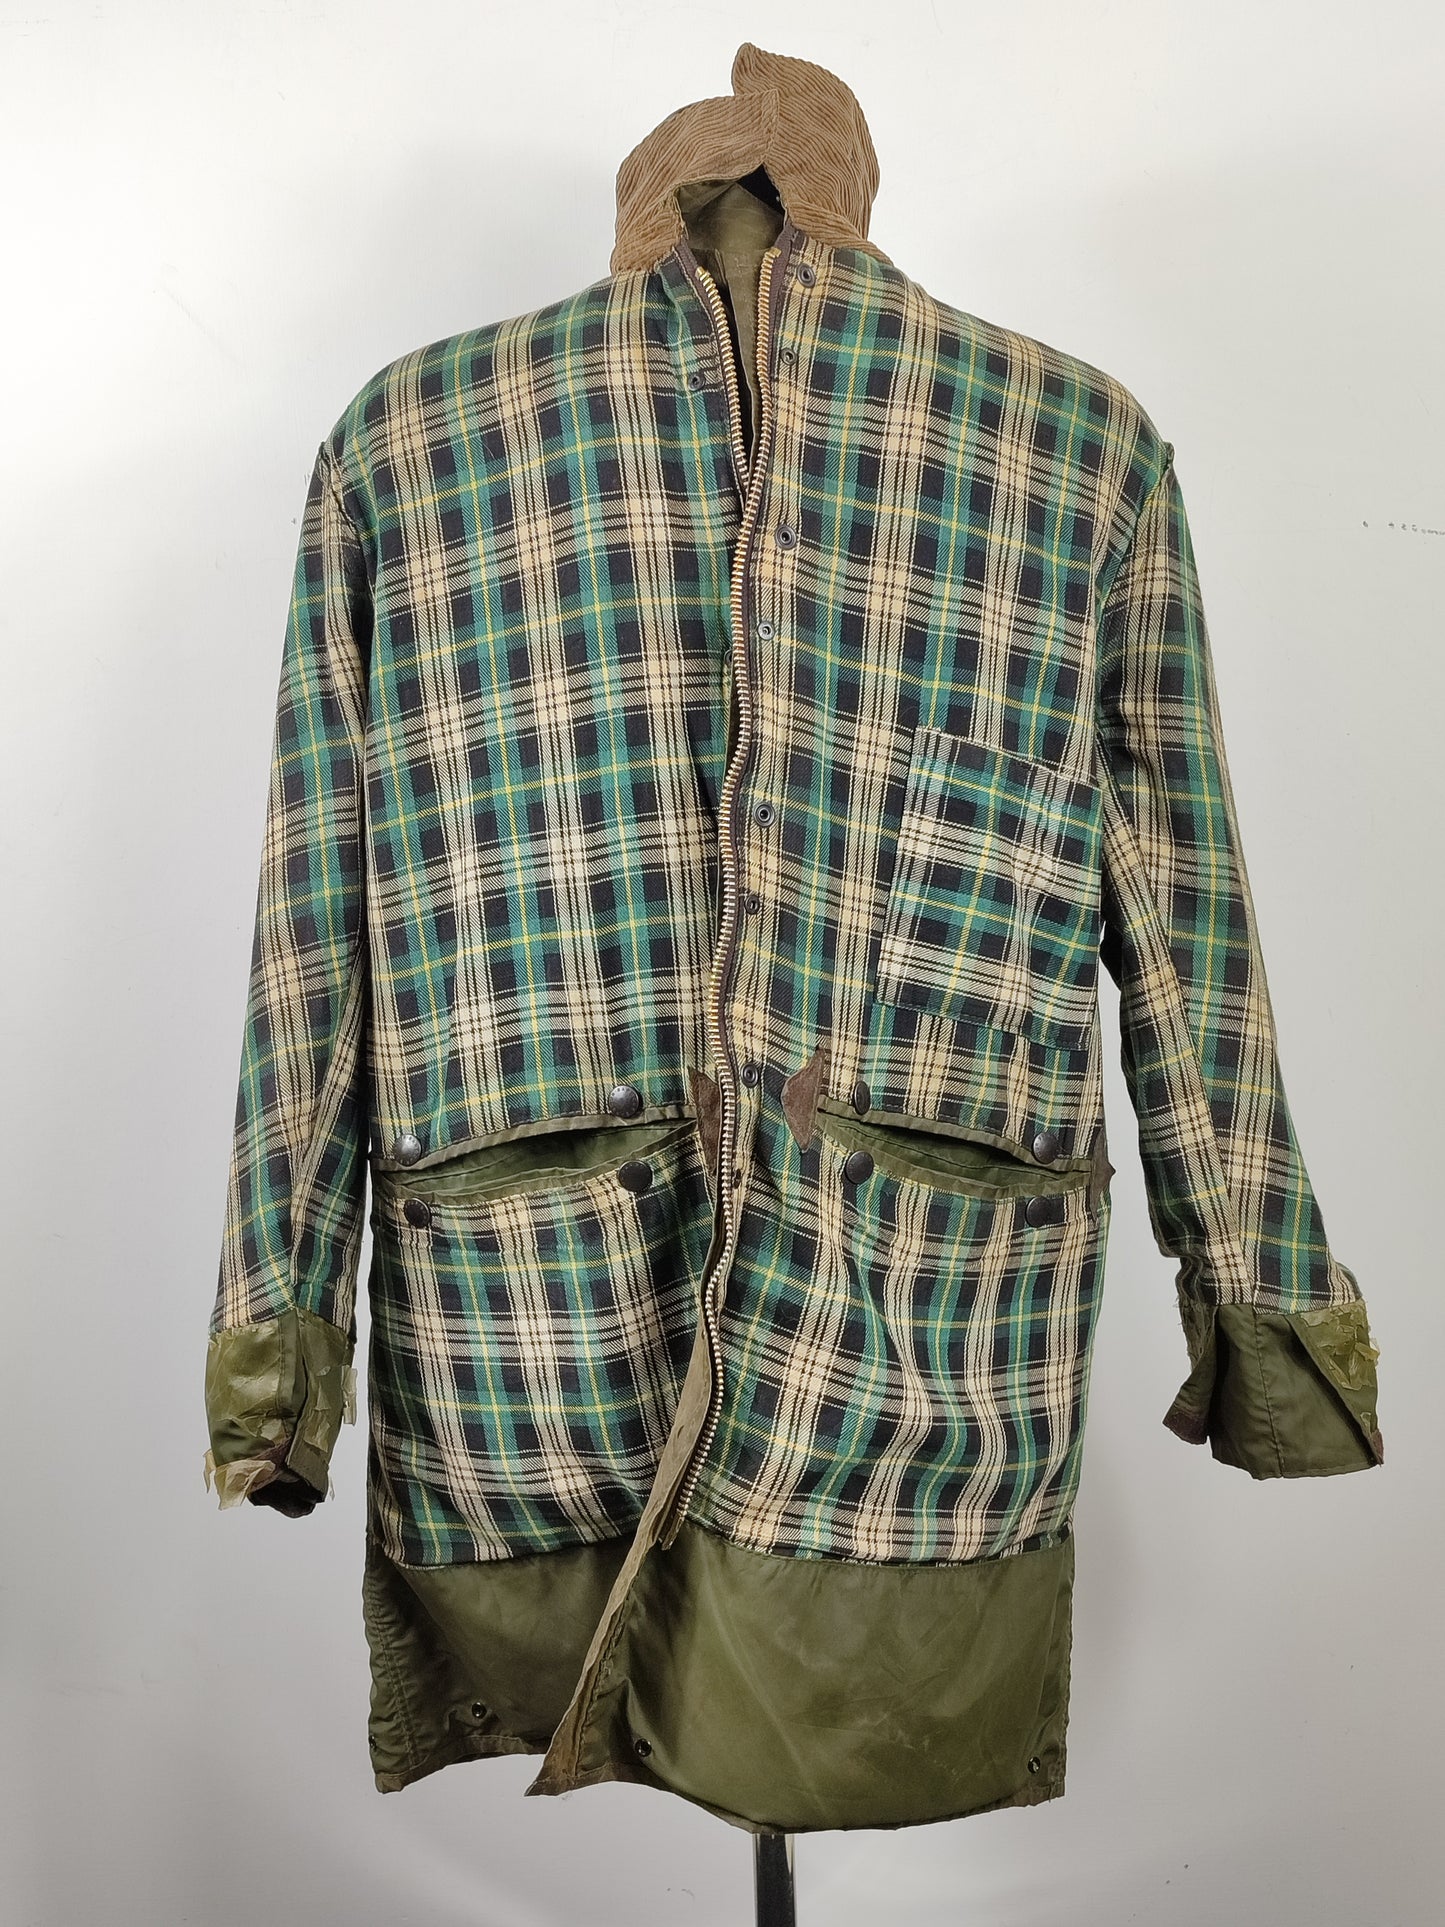 Barbour Border verde cotone Cerato C42/107 cm Green Border Wax Vintage Coat Size Large